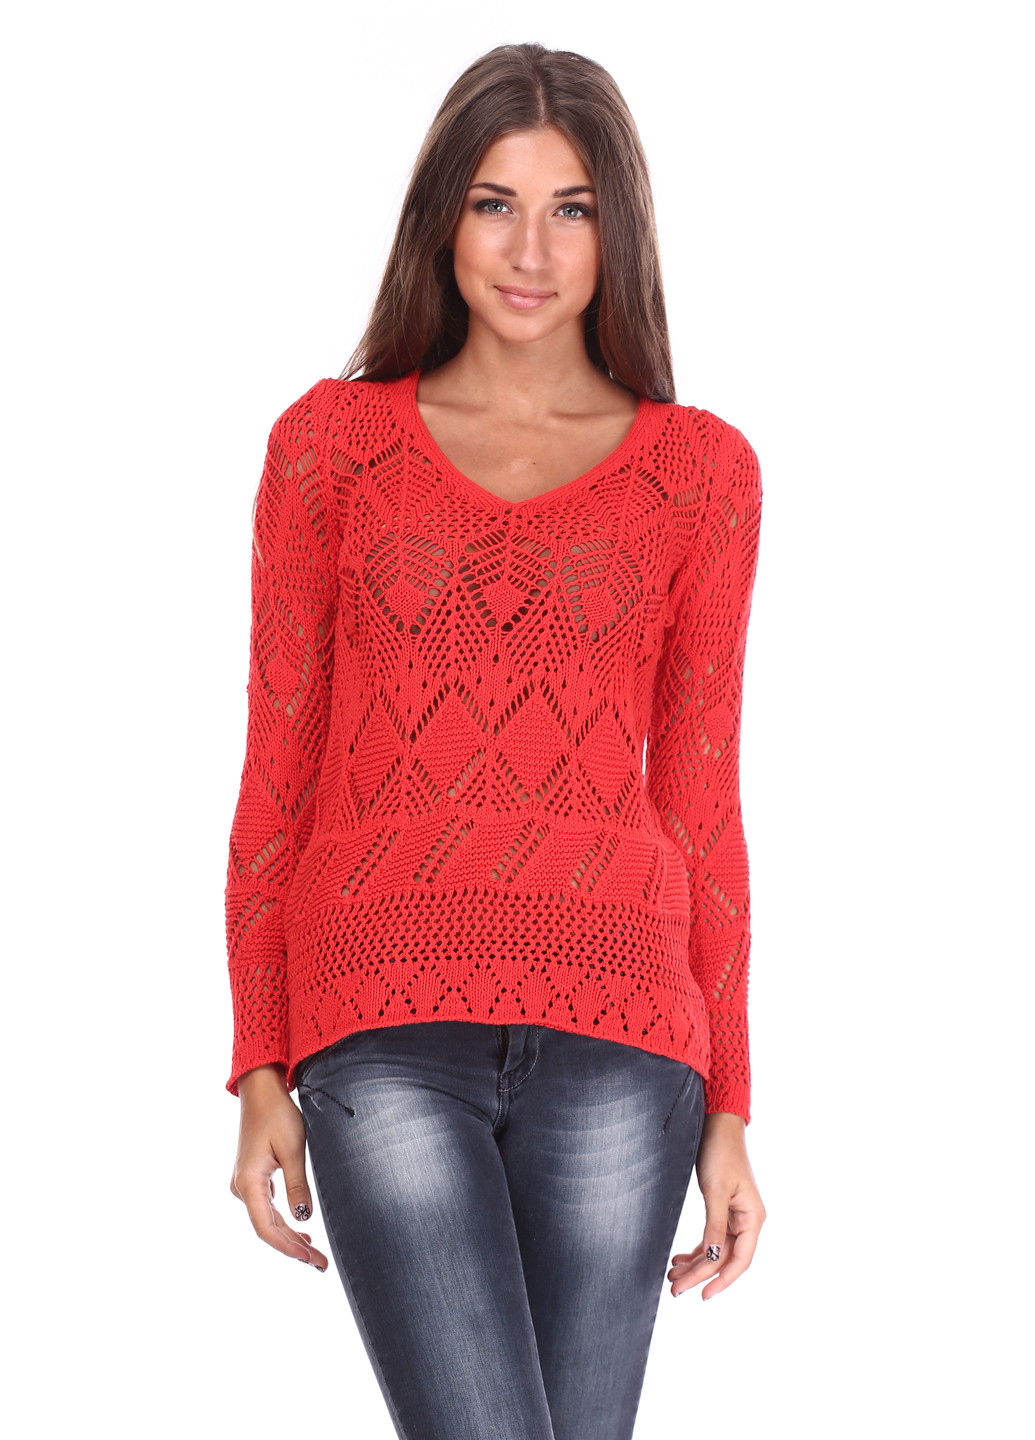 Коралловый демисезонный пуловер пуловер Folgore Milano